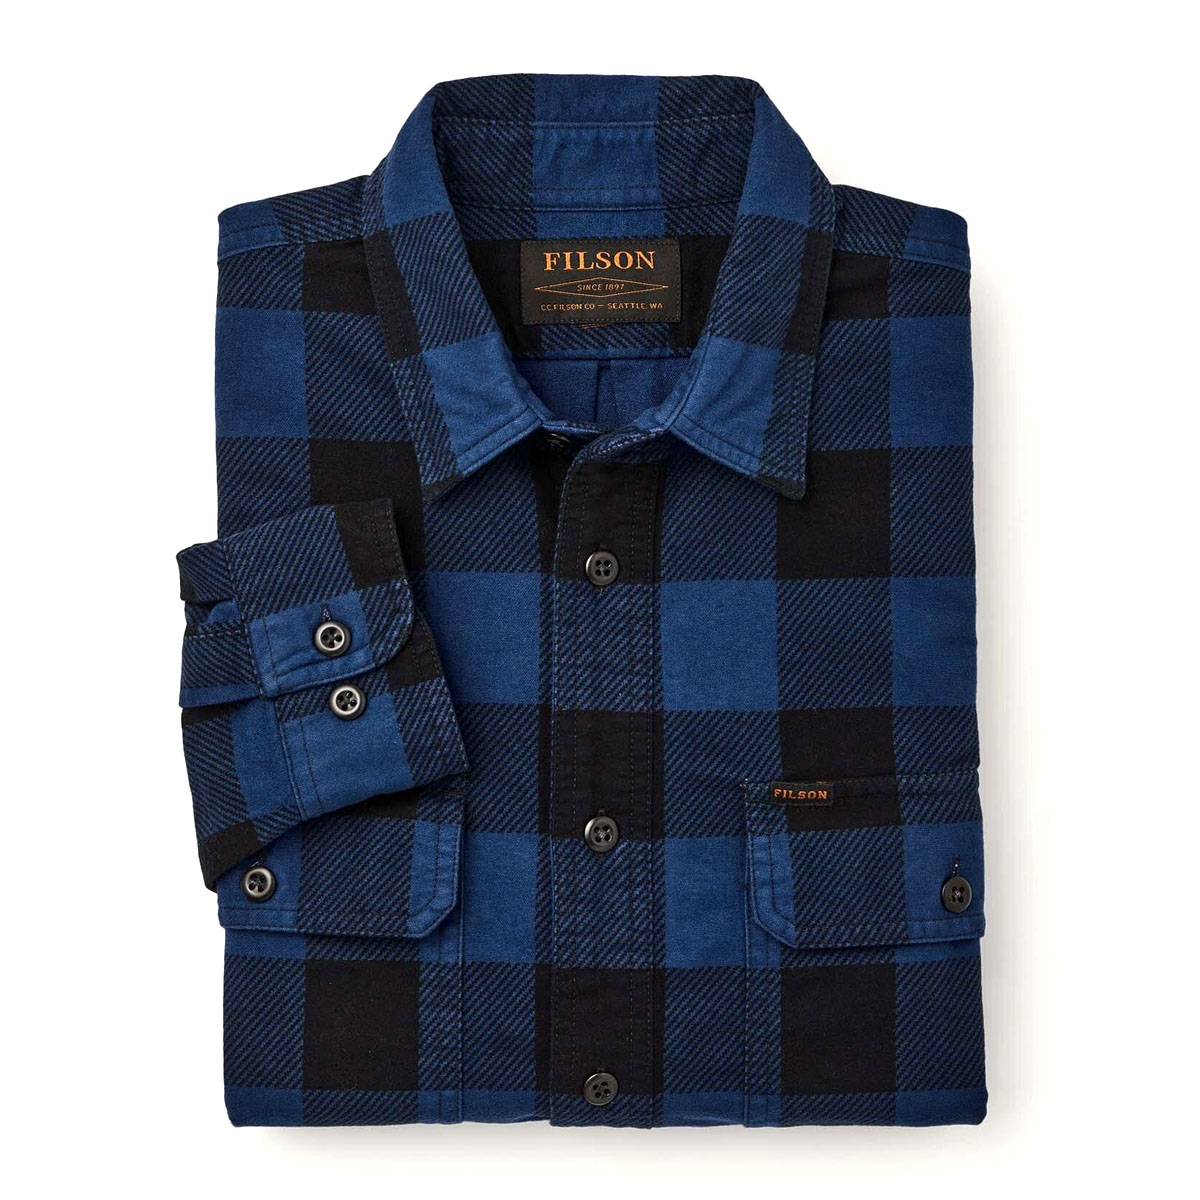 Filson Field Flannel Shirt Cobalt Black Buffalo, Comfortabel en even zacht als sterk